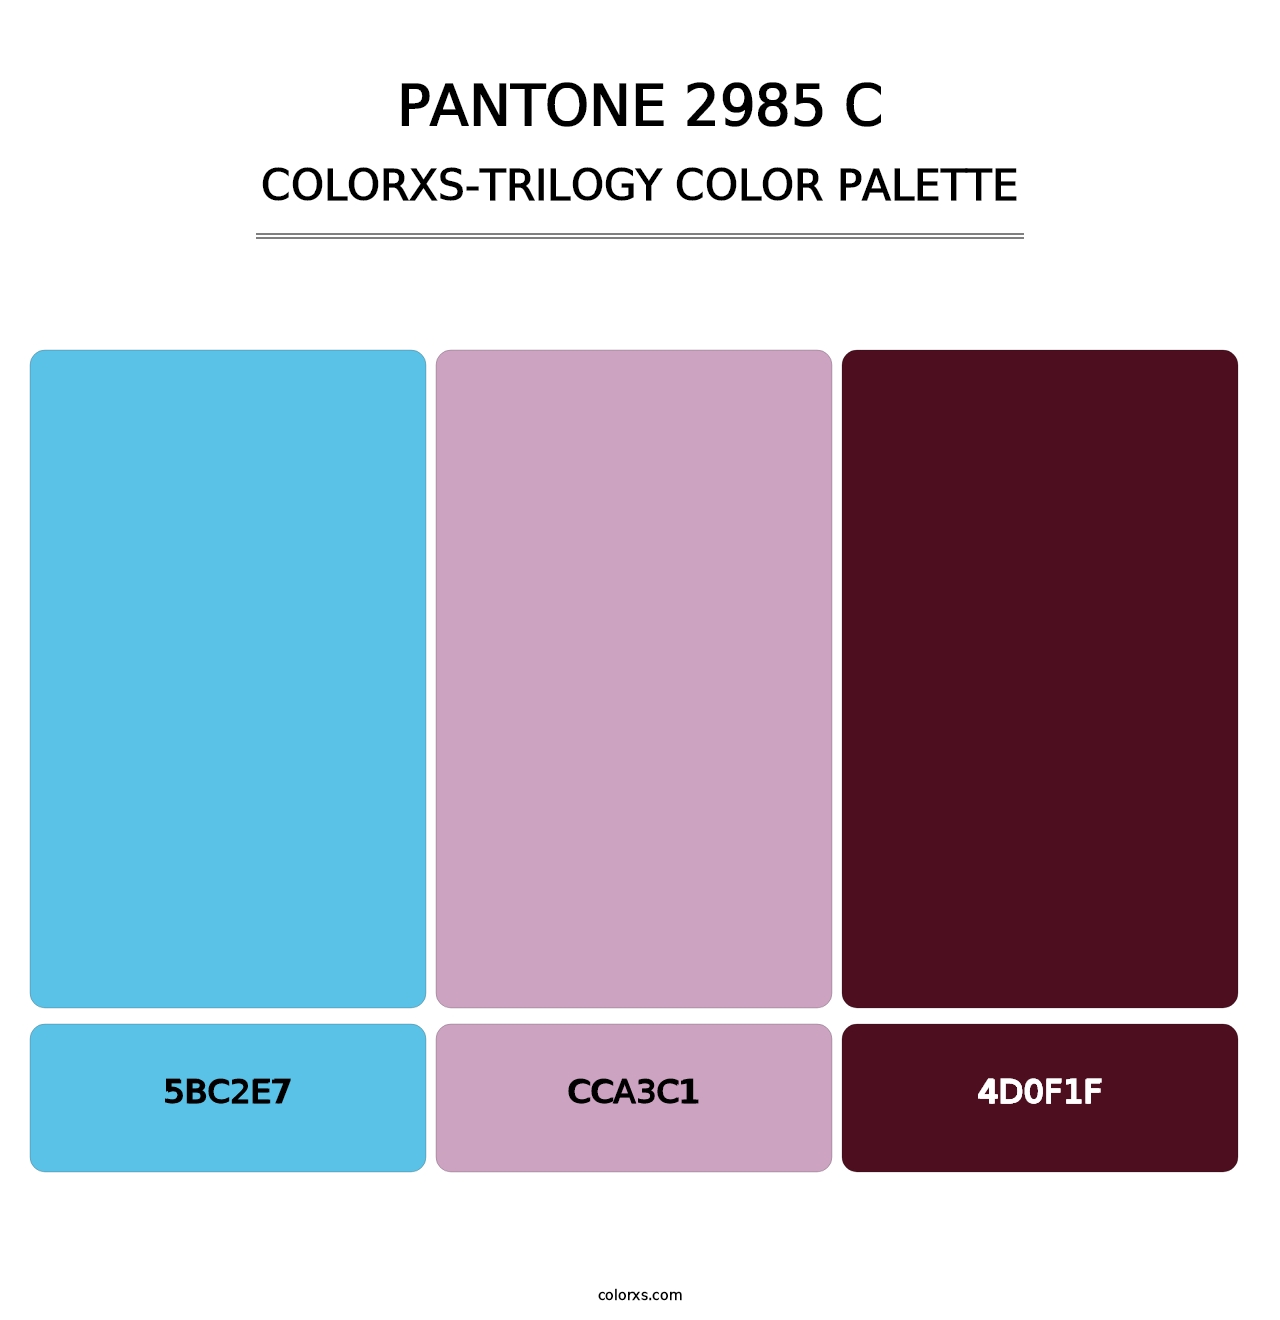 PANTONE 2985 C - Colorxs Trilogy Palette